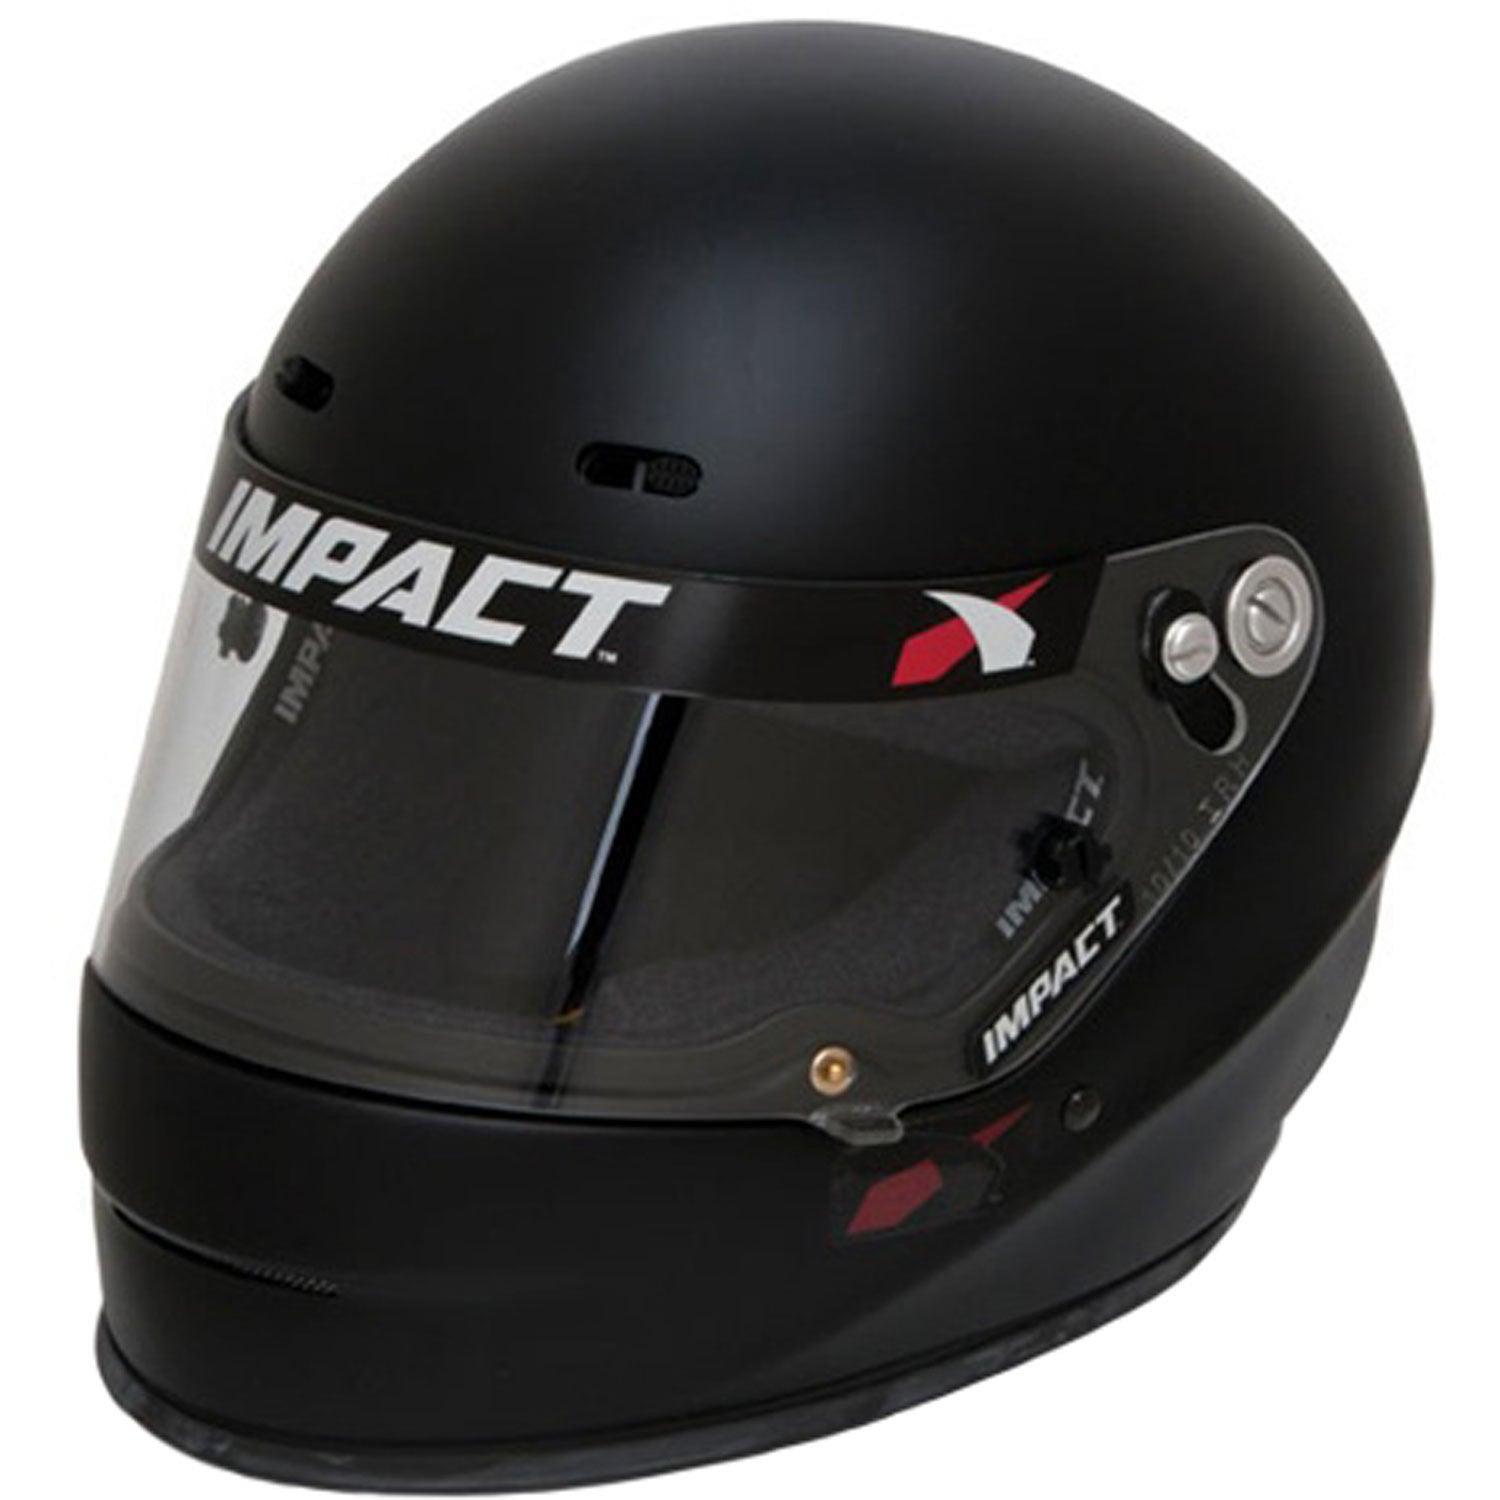 Helmet 1320 Small Flat Black SA2020 - Burlile Performance Products